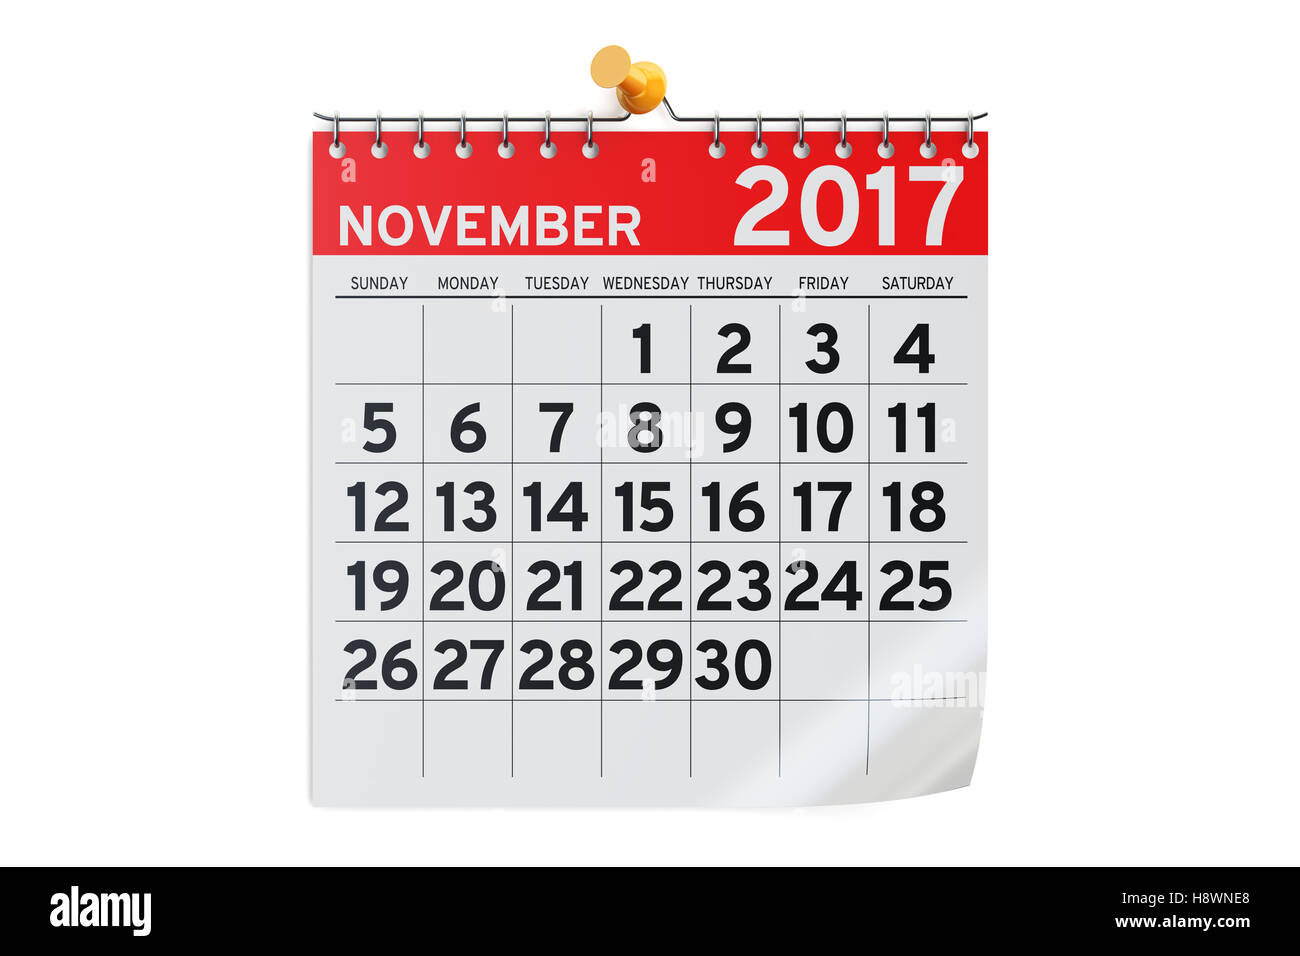 Calendrier Novembre 2017, rendu 3D isolé sur fond blanc Banque D'Images